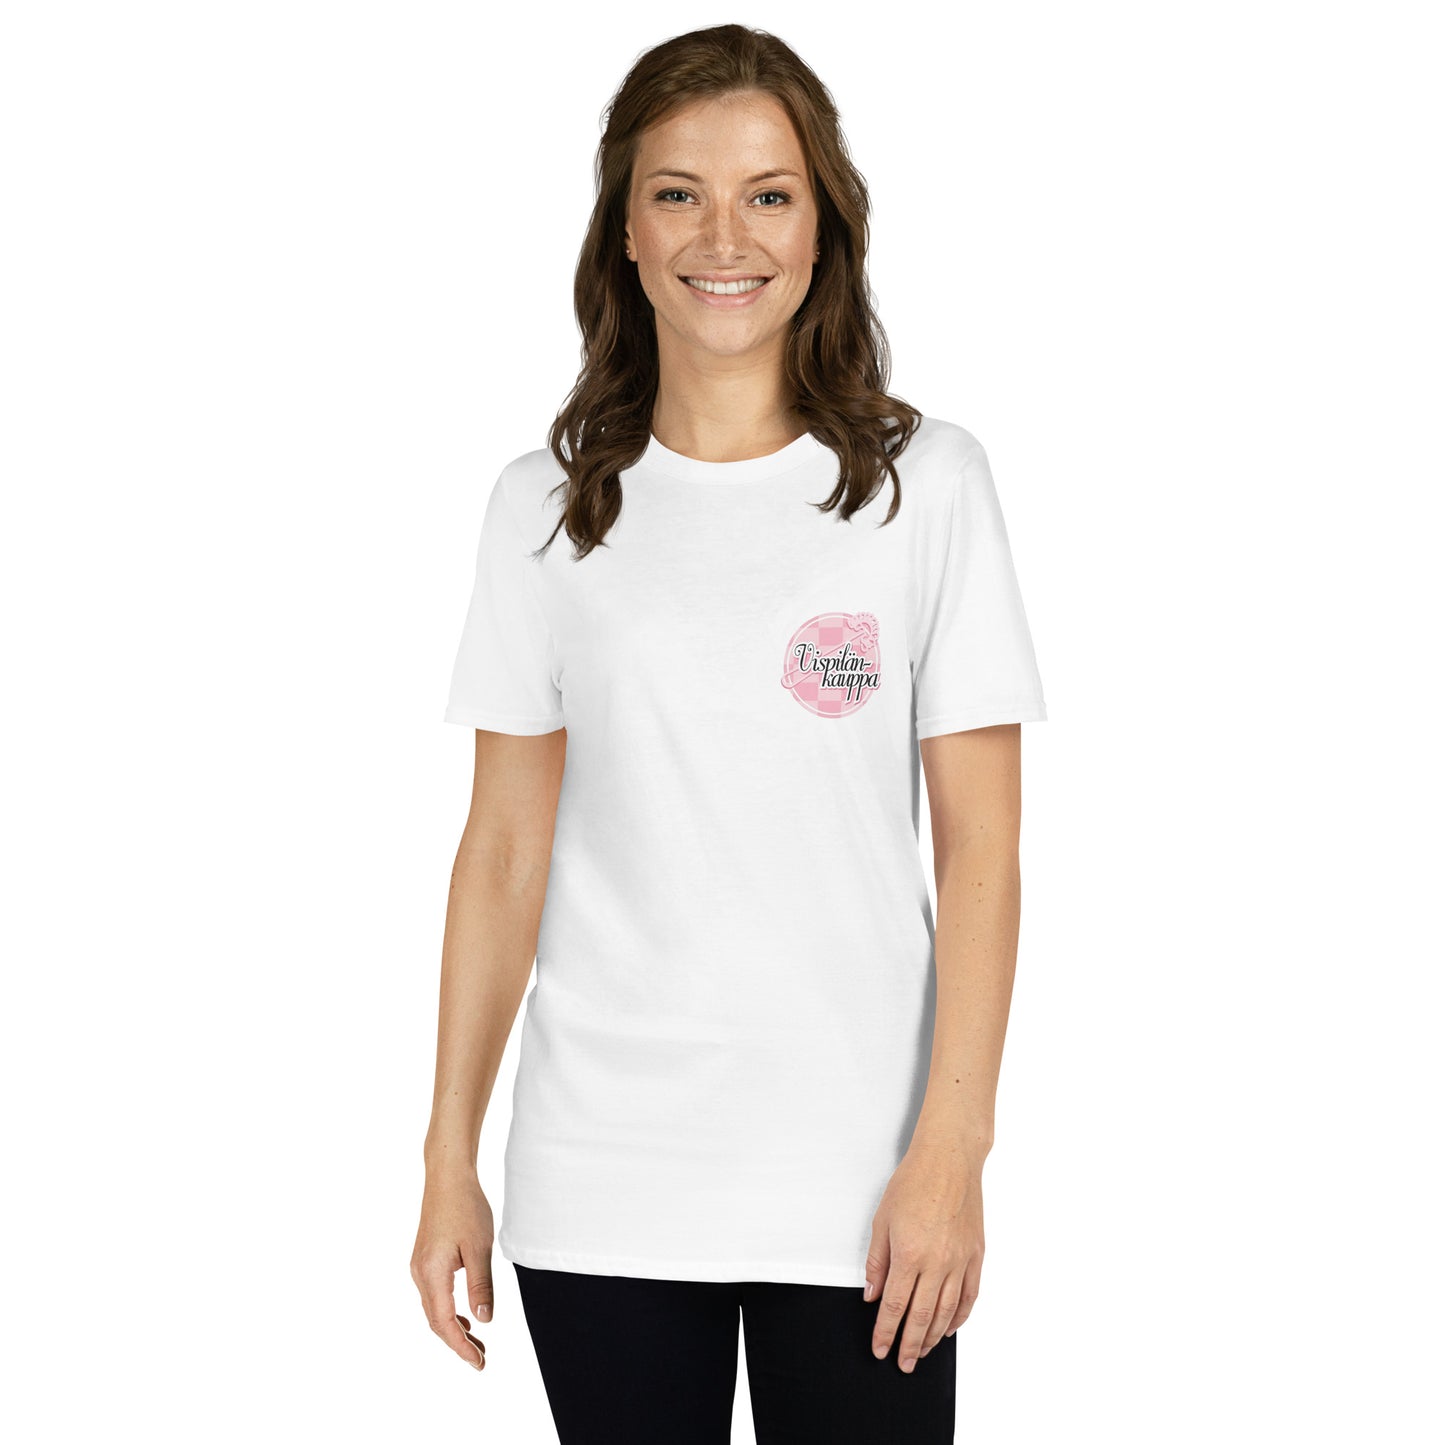 "Vispilänkauppa" unisex t-paita (logo pienellä rinnassa)